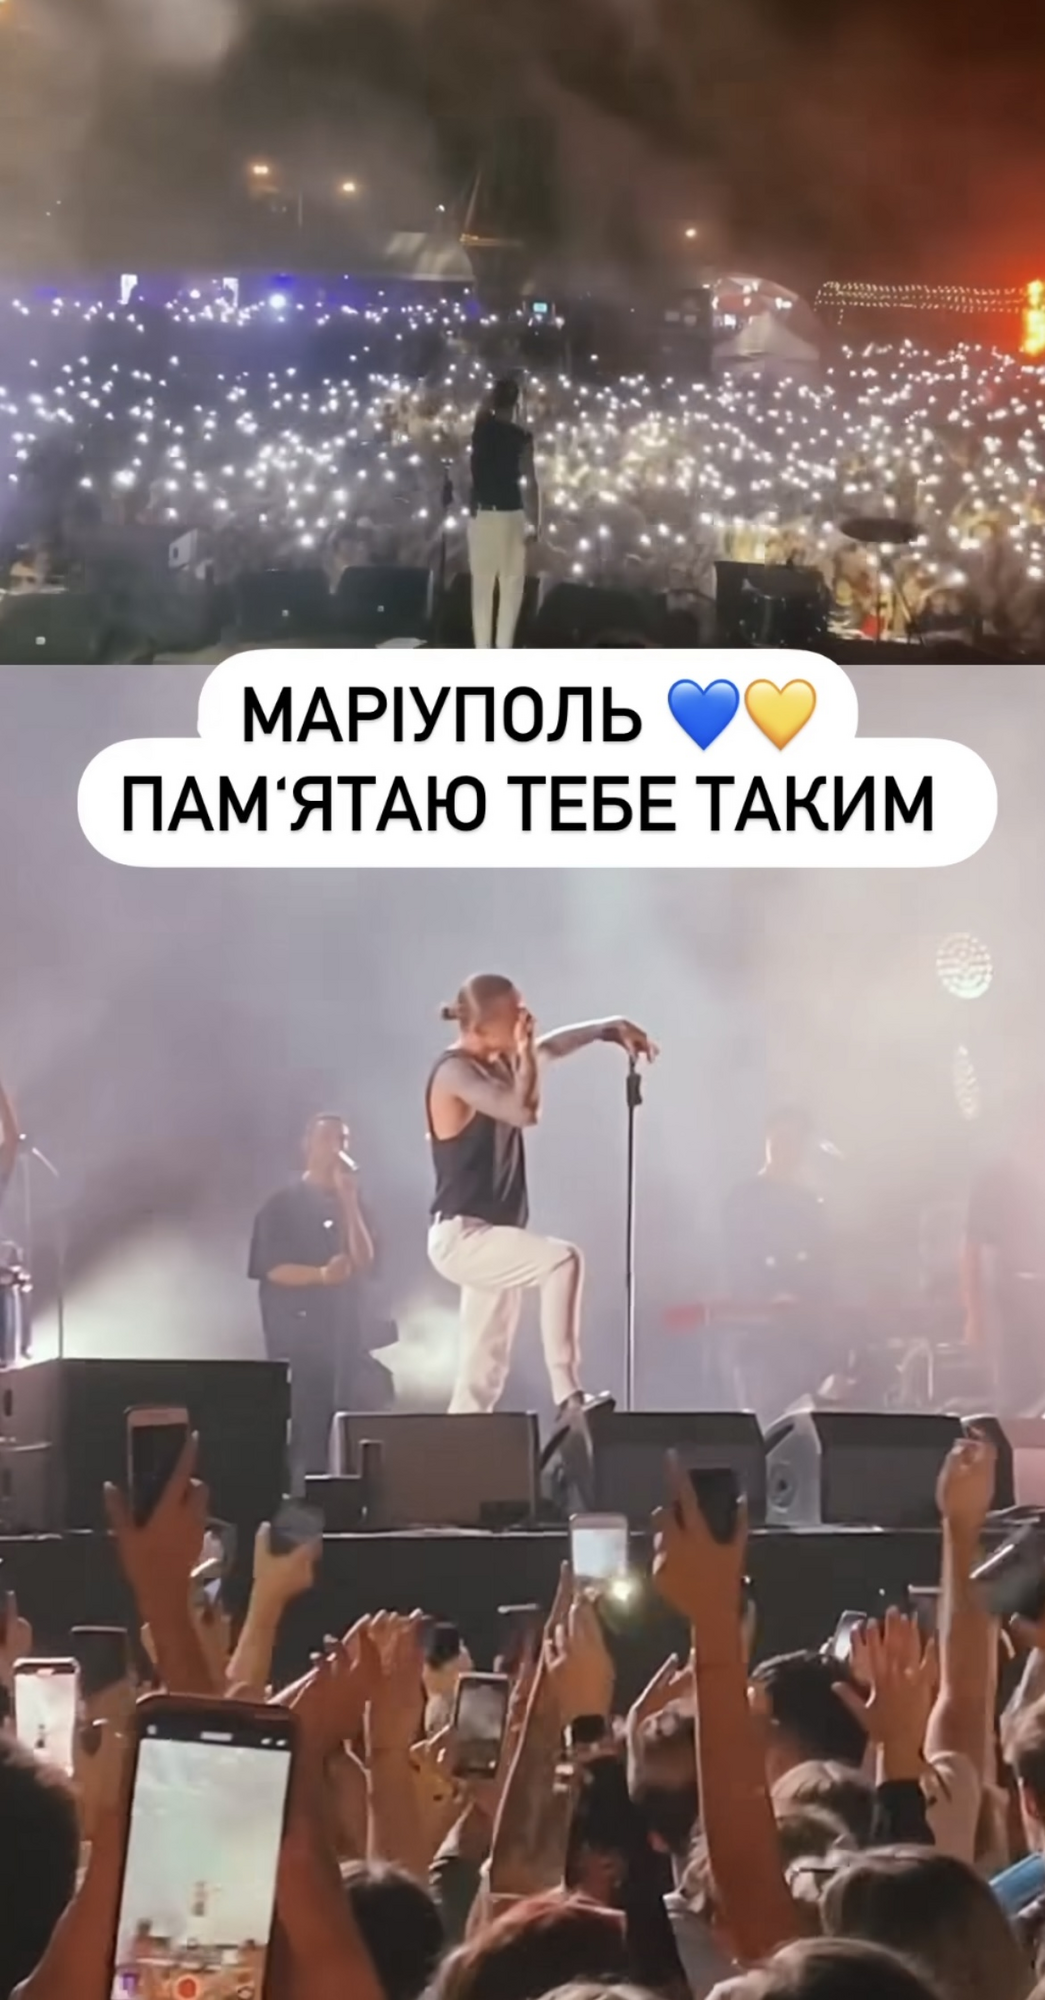 "Серце розривається знову і знову": Пивоваров розчулив фанатів спогадами про концерт у Маріуполі. Відео